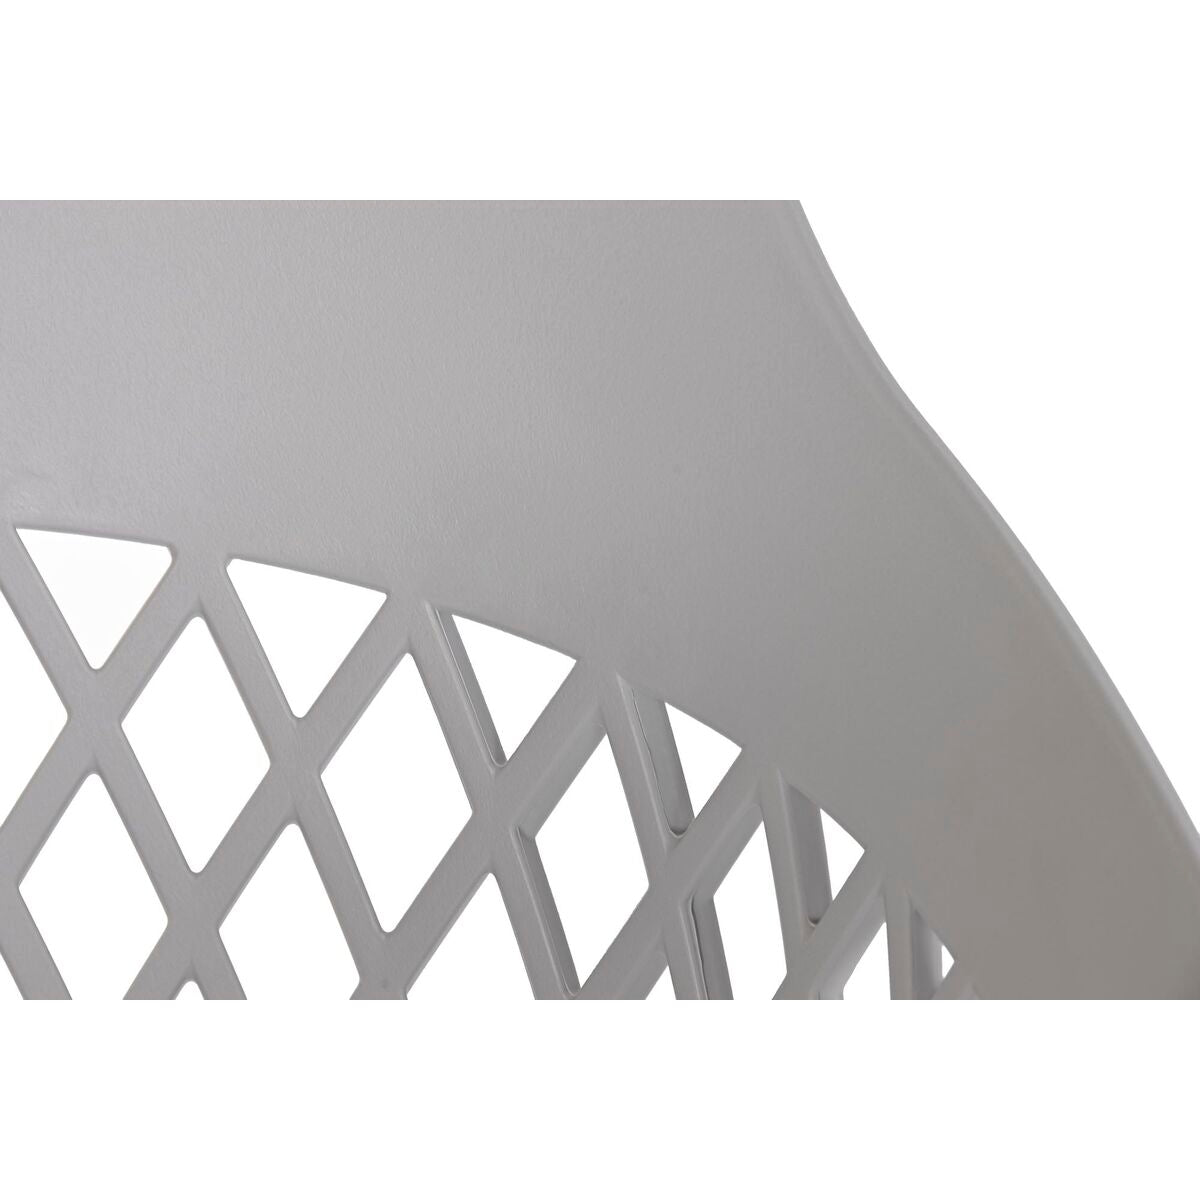 Chaise de Salle à Manger Design Home Decor Métal Gris clair polypropylène (57 x 57 x 80,5 cm)